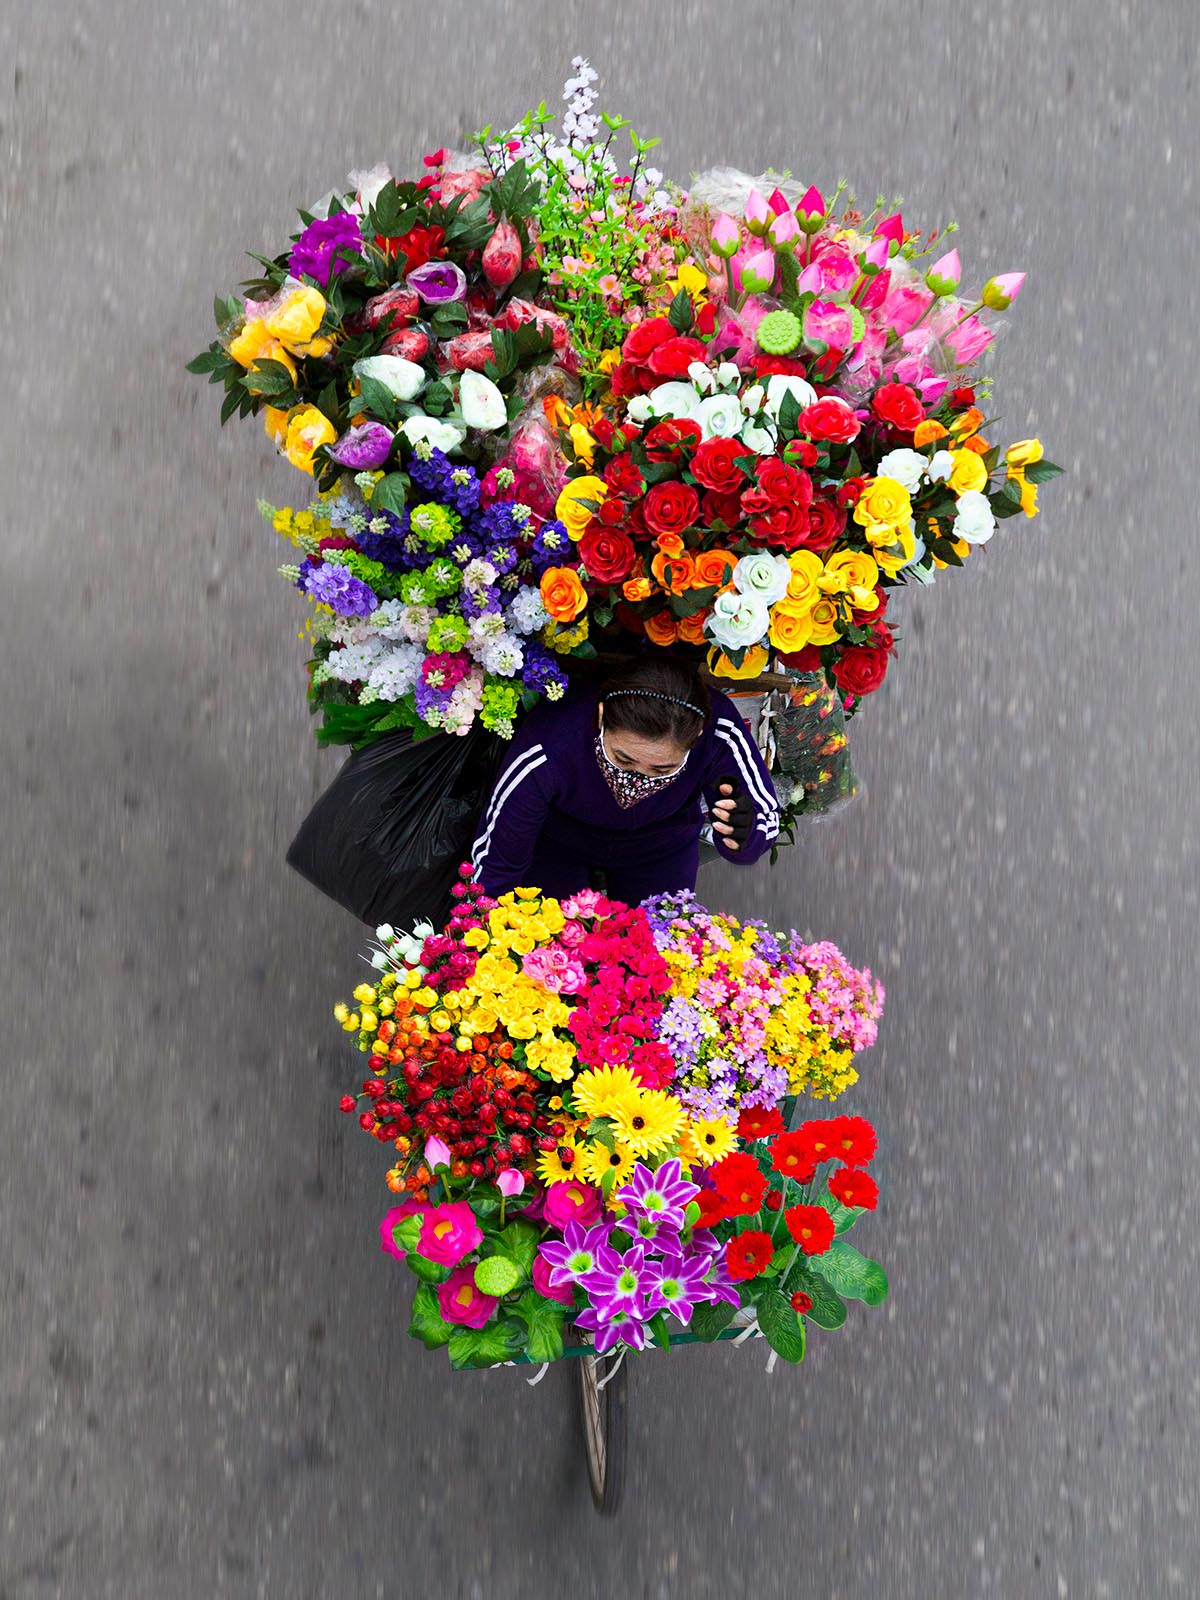 Flower Merchants in Motion 04